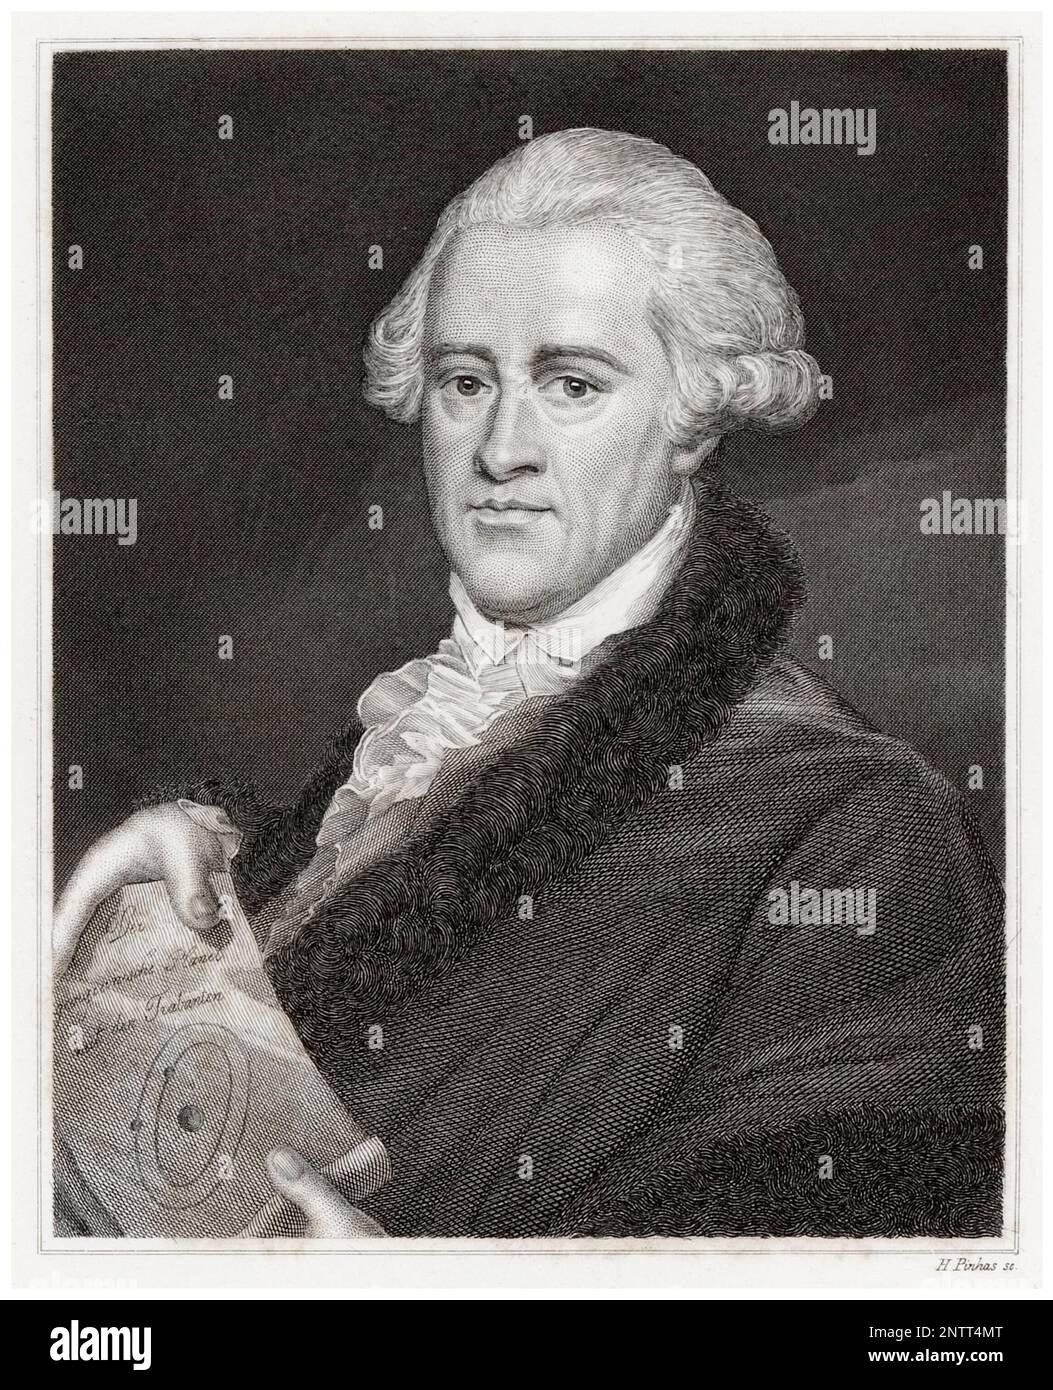 Sir William Herschel (1738-1822), German-born British Astronomer and Composer, portrait engraving by Hermann Hirsch Pinhas, 1805-1844 Stock Photo